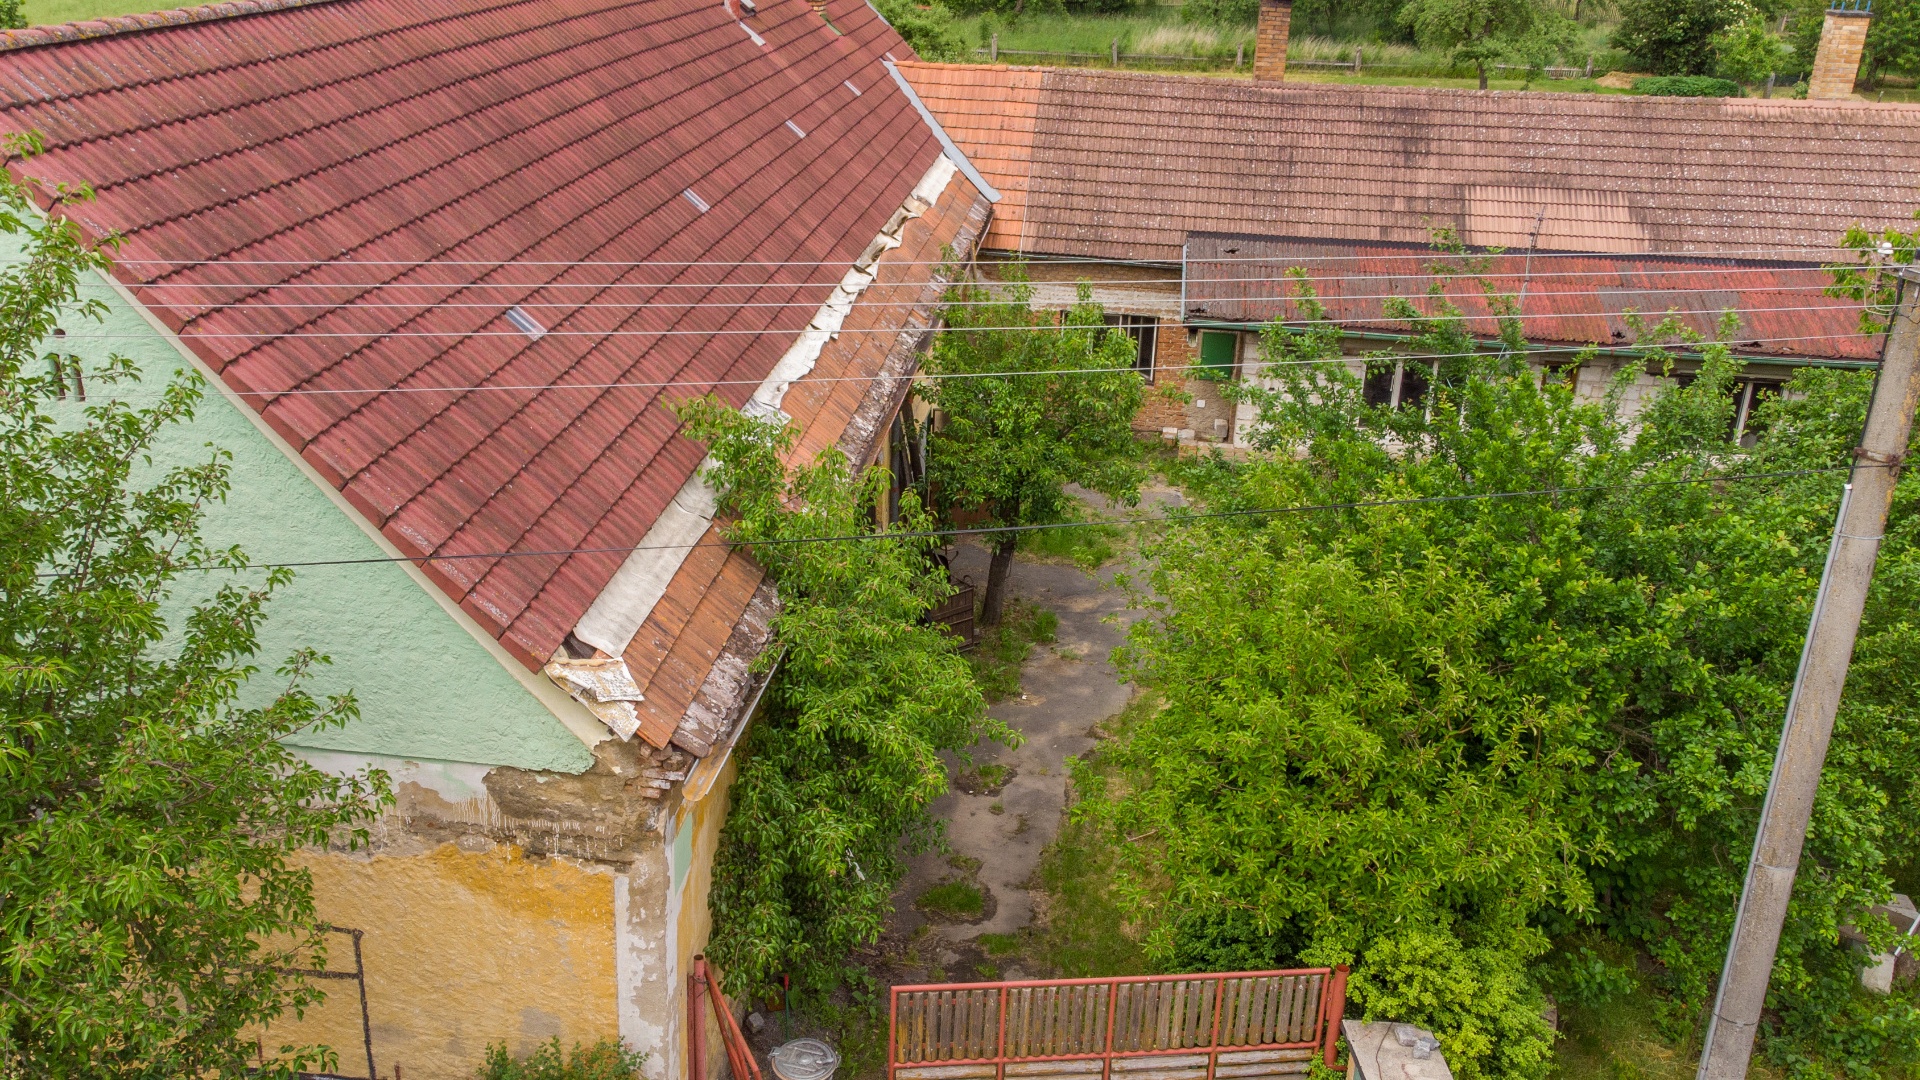 Prodej chalupy 100 m2 v obci Kocelovice u města Lnáře, nedaleko Blatné, k dokončení a s velkým pozemkem 951 m2.